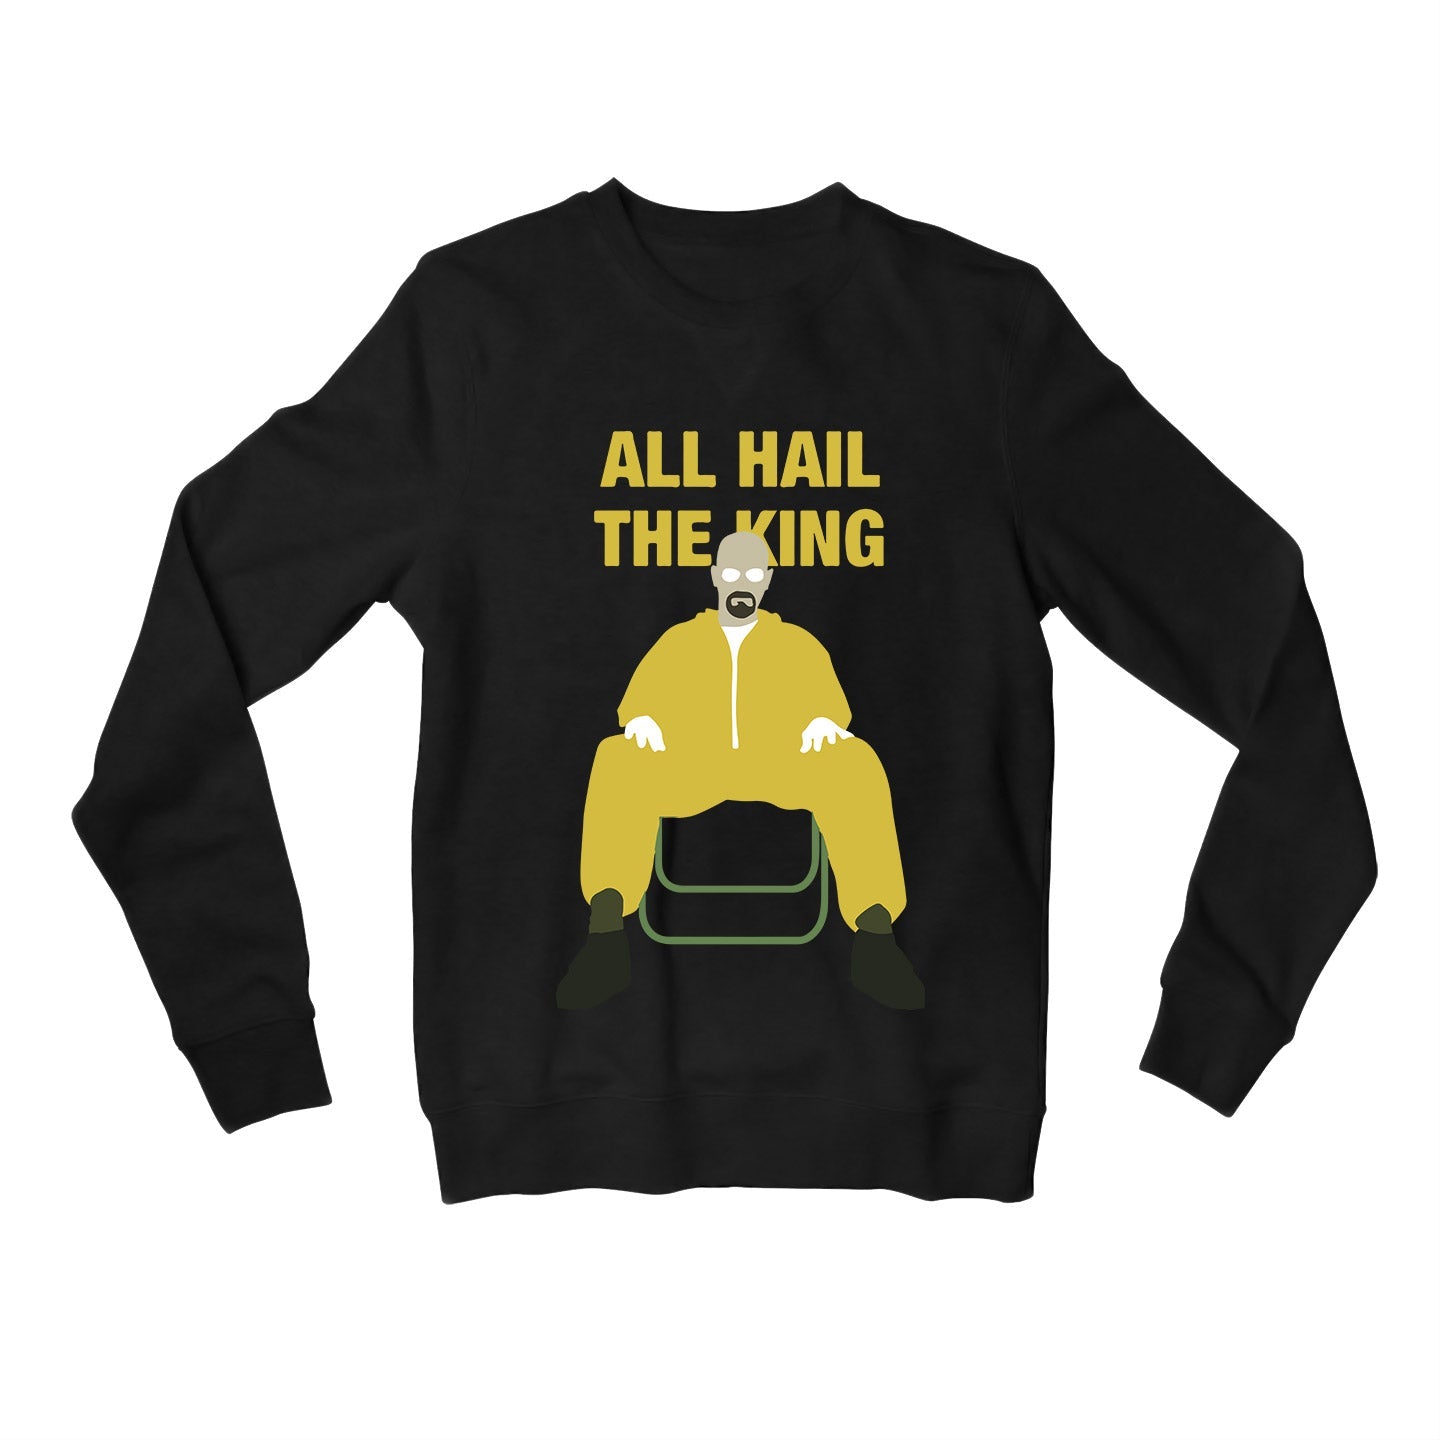 Breaking Bad Sweatshirt - All Hail The King Sweatshirt The Banyan Tee TBT